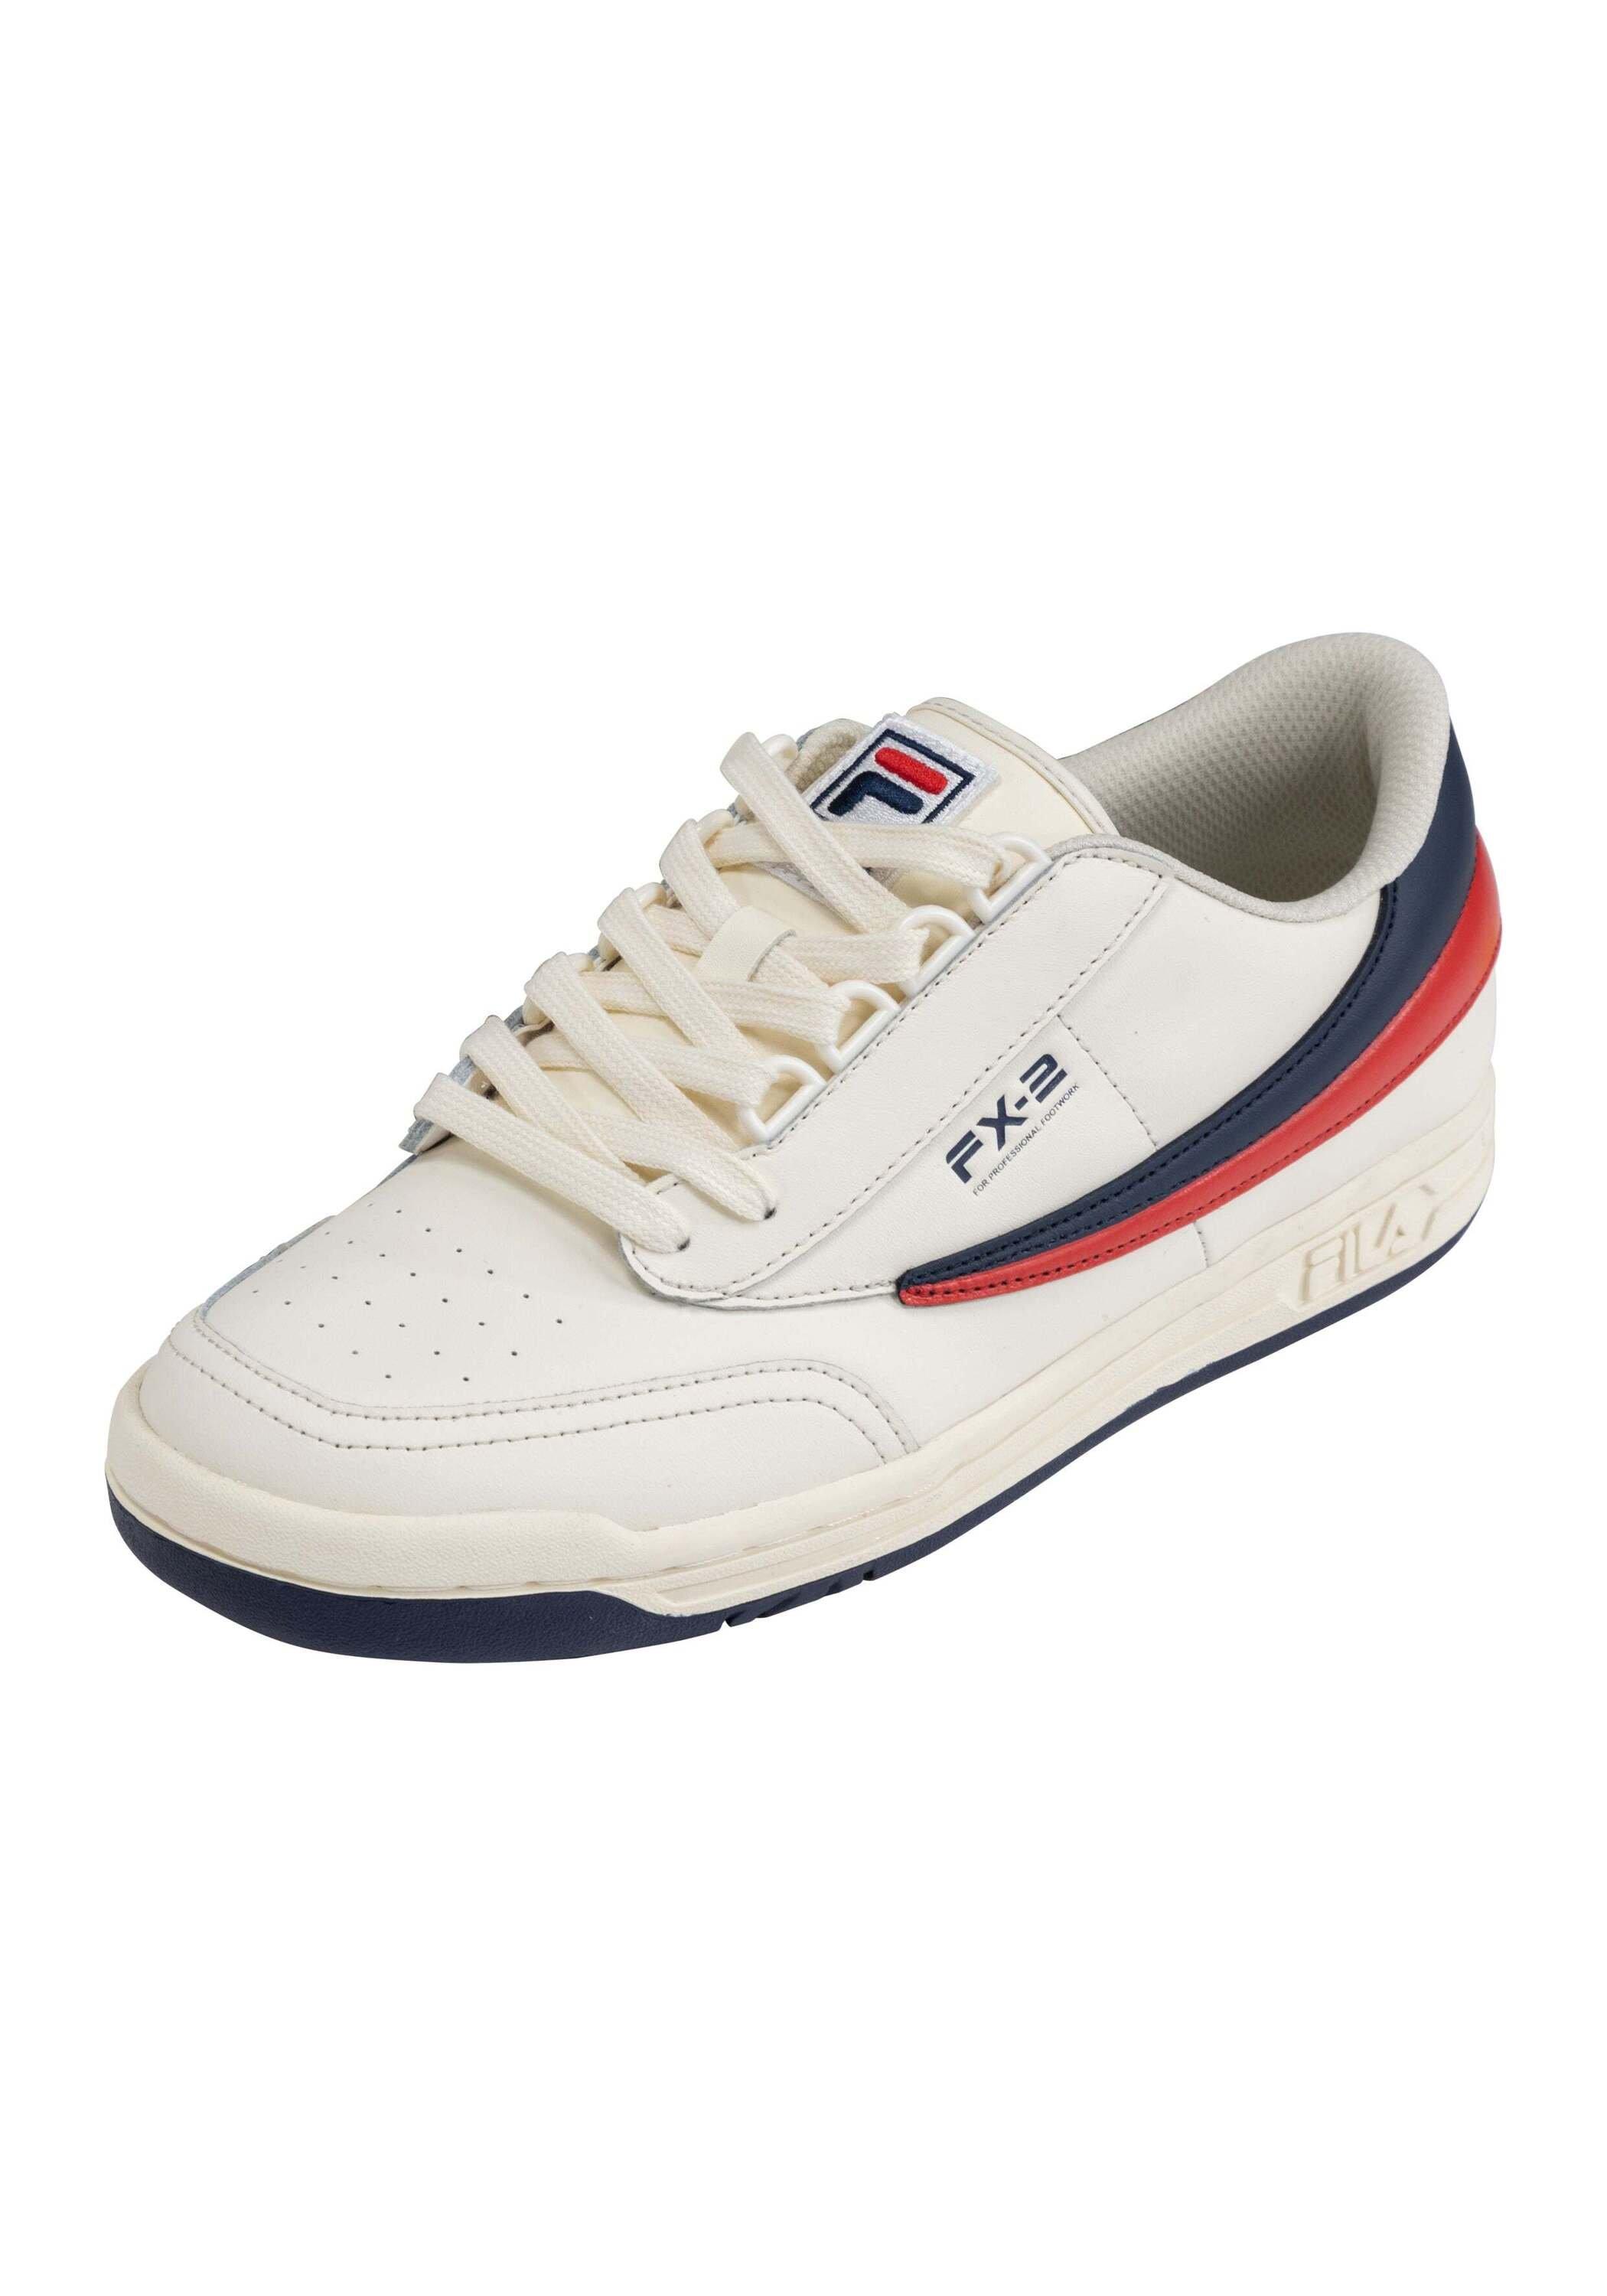 FILA  Sneaker Original Tennis '83 